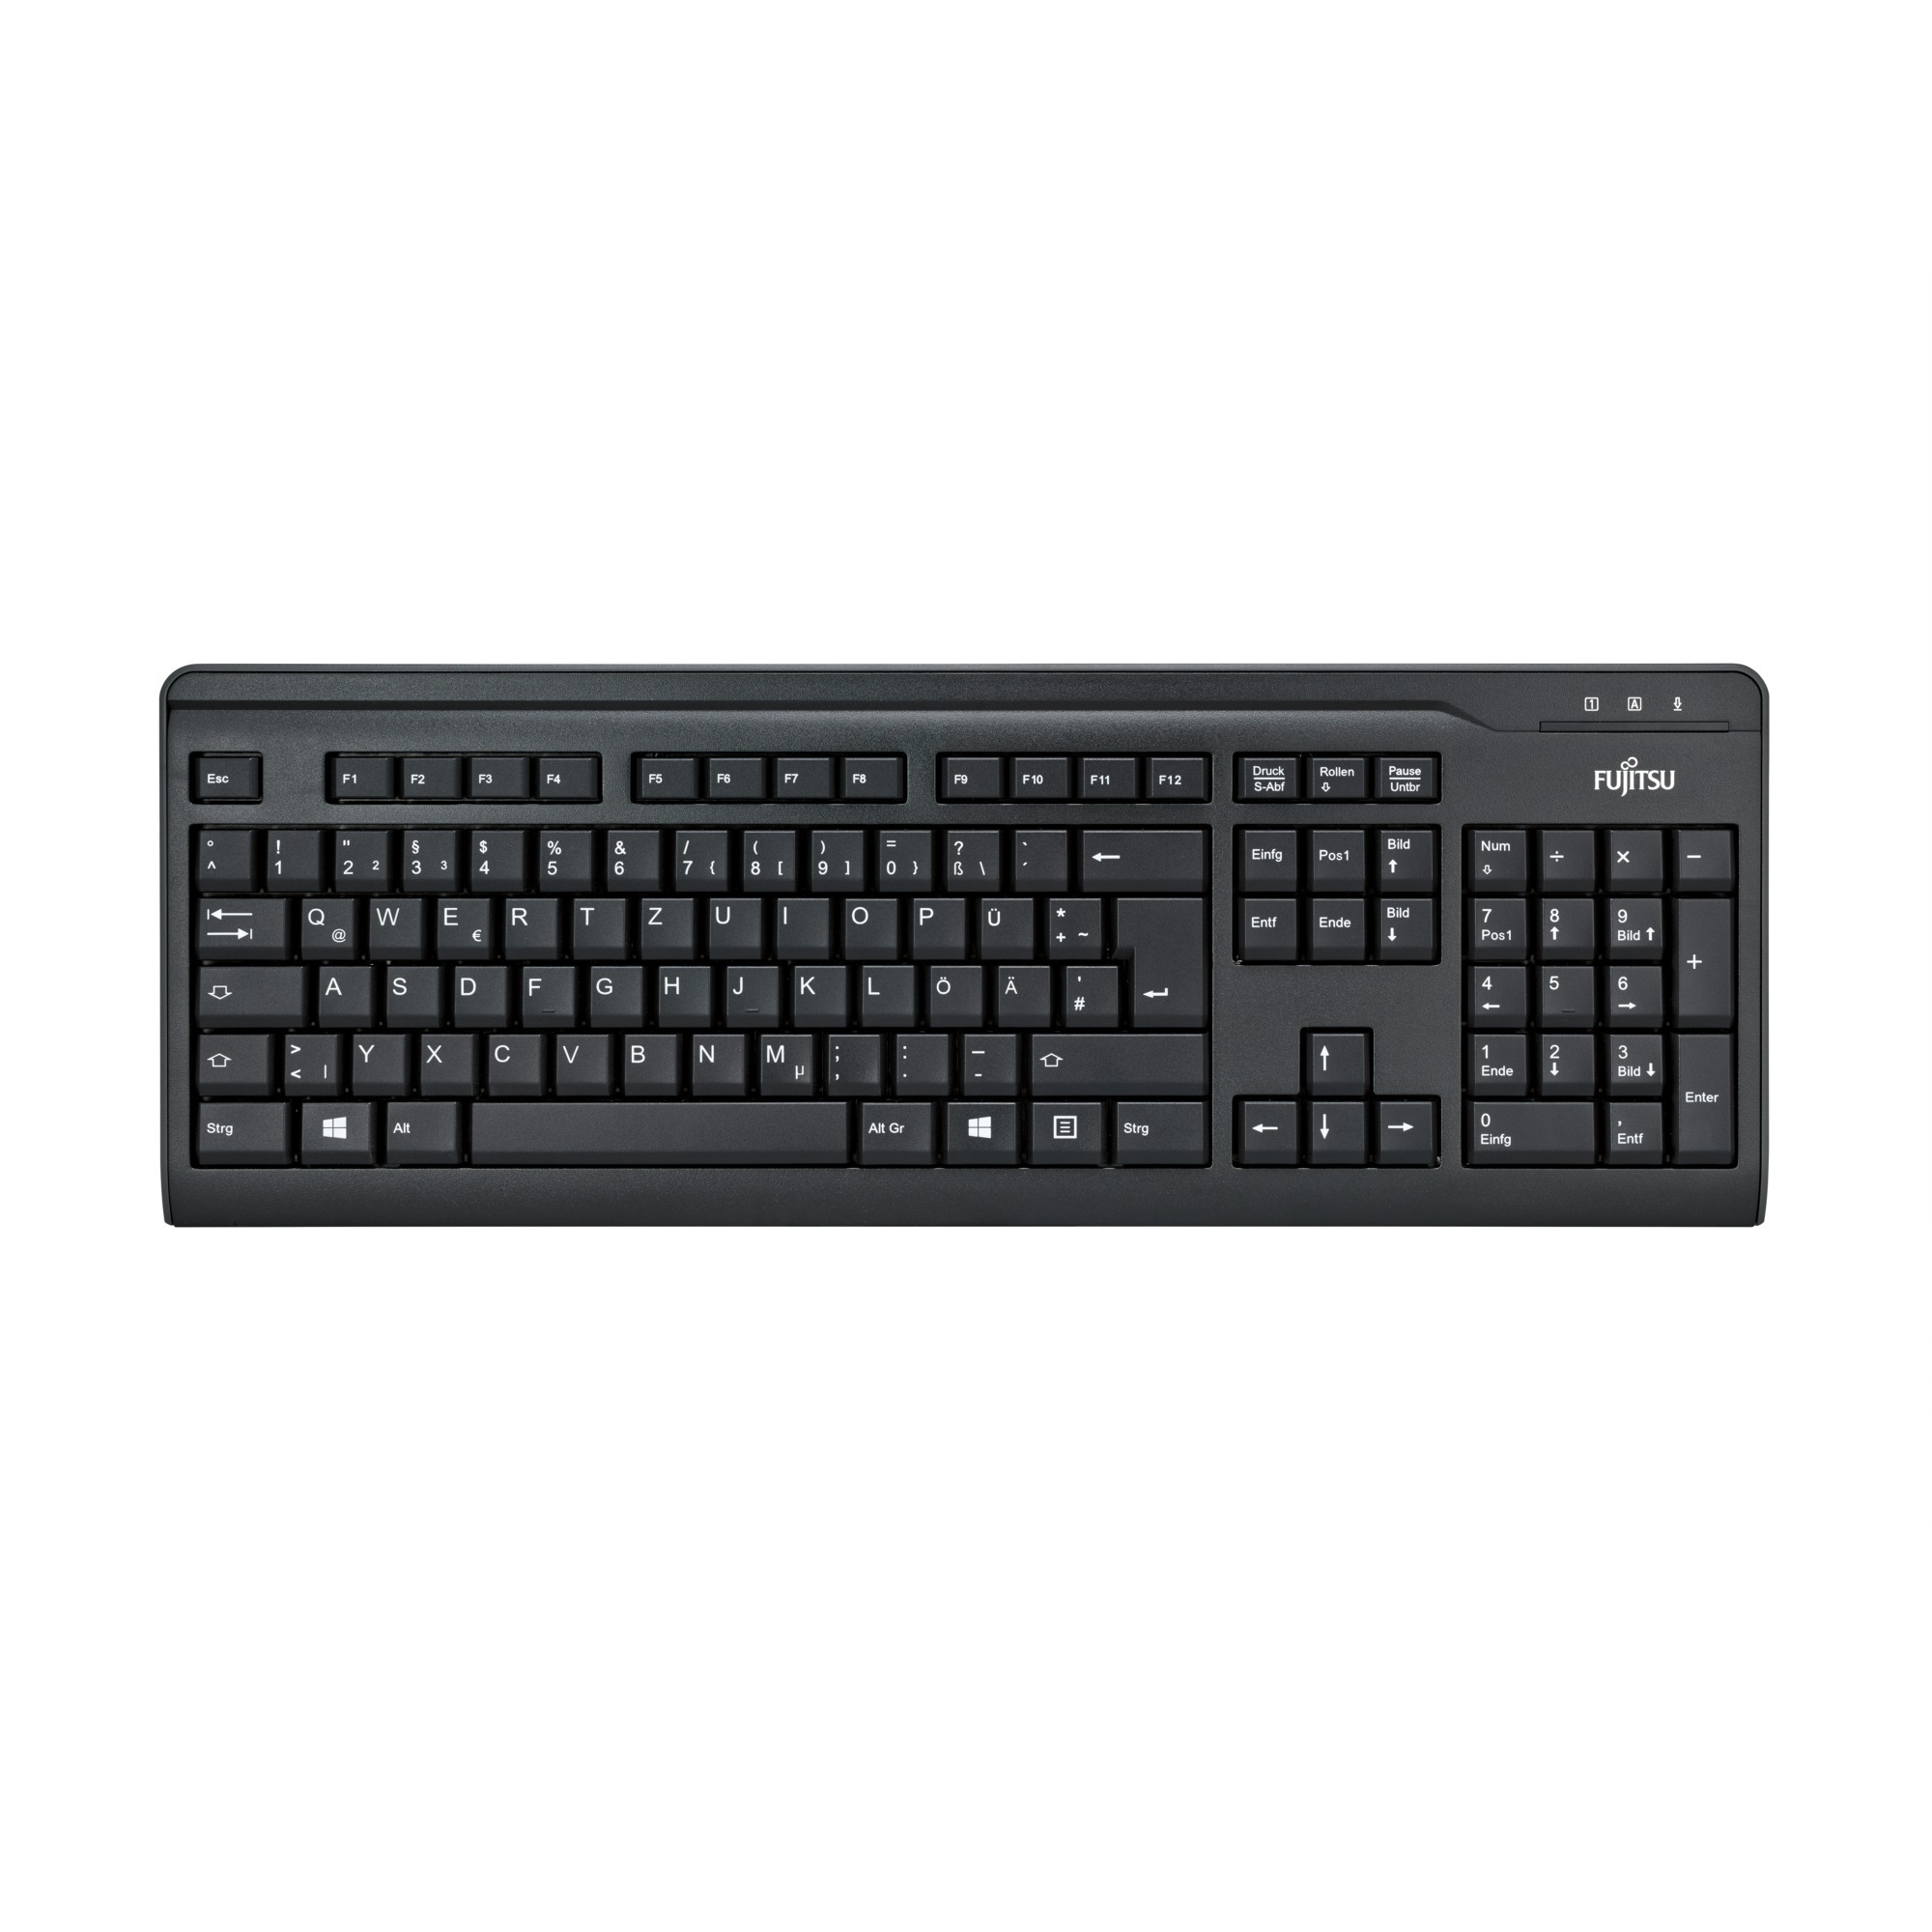 Image of Alternate - KB410 USB, Tastatur online einkaufen bei Alternate